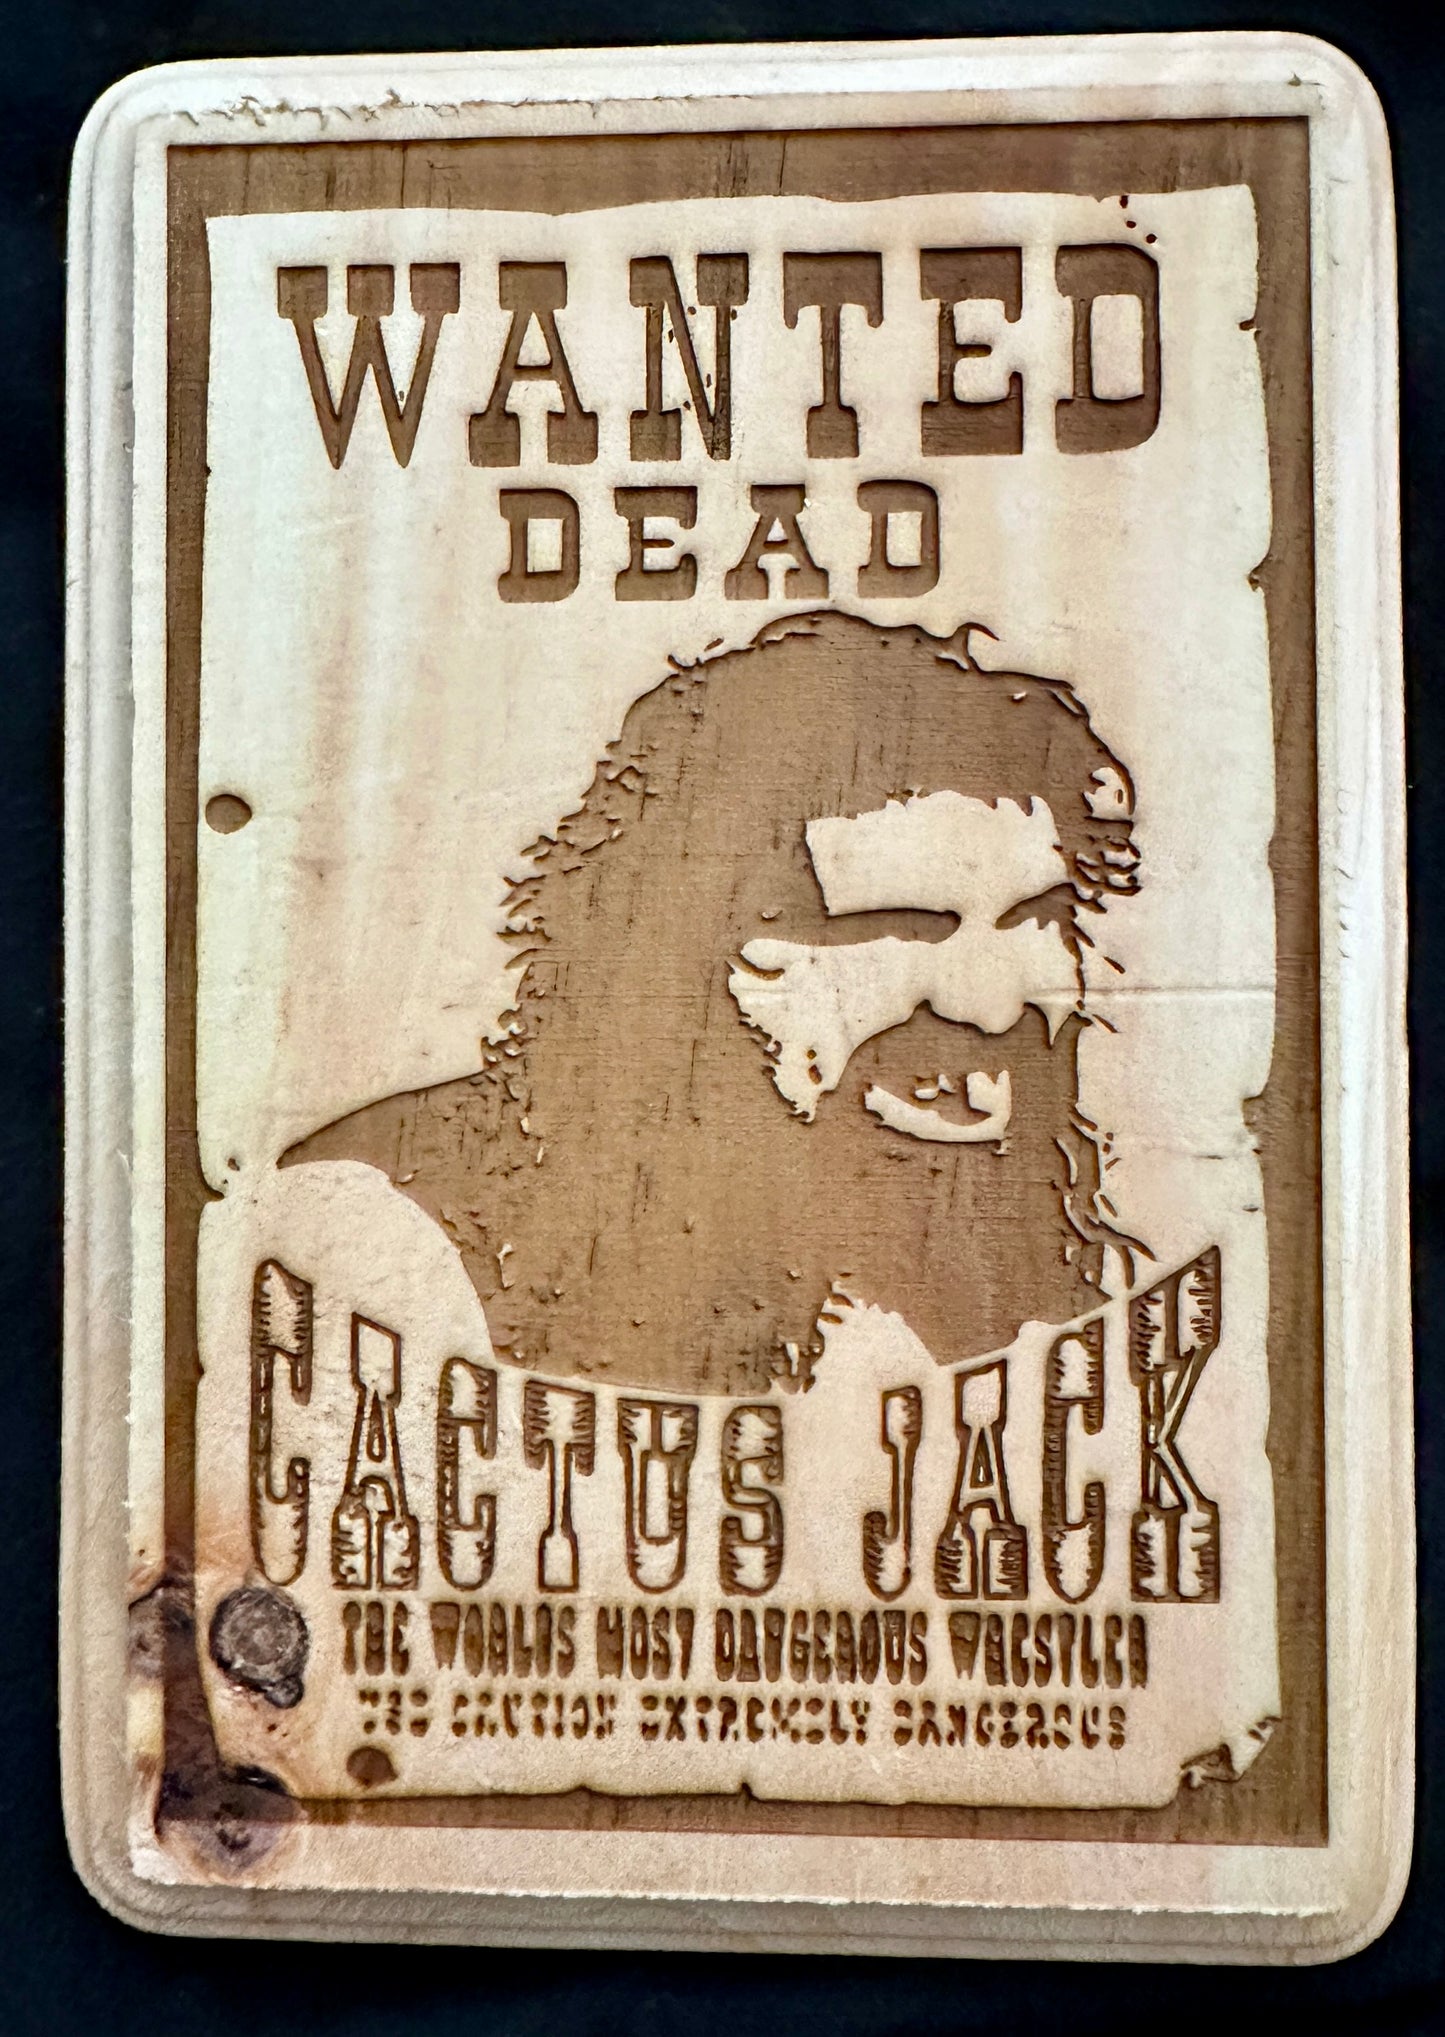 Wanted Dead Cactus Jack Plaque